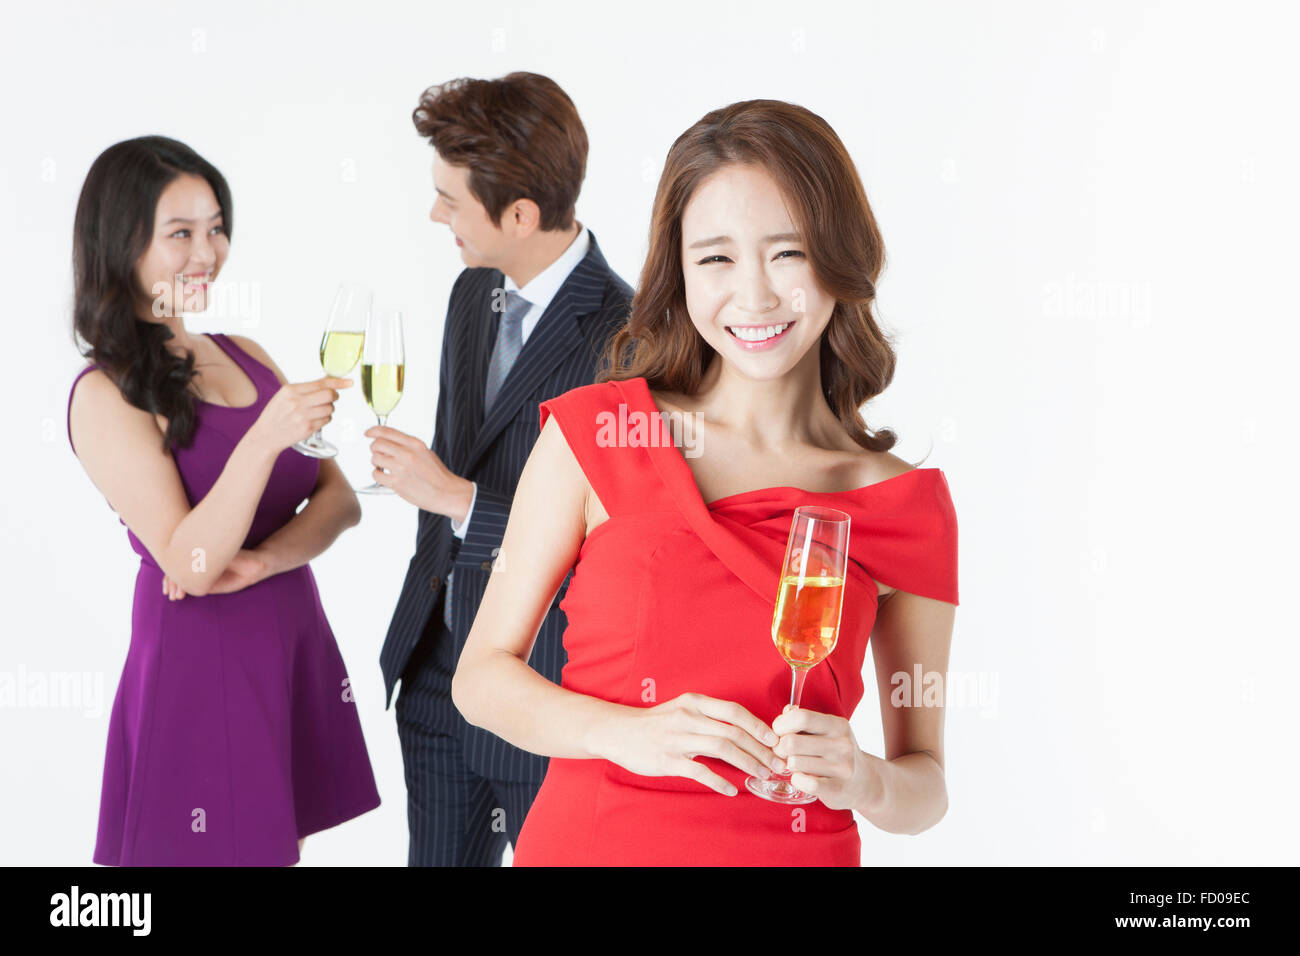 Junge Erwachsene mit einer Champagner-party Stockfoto